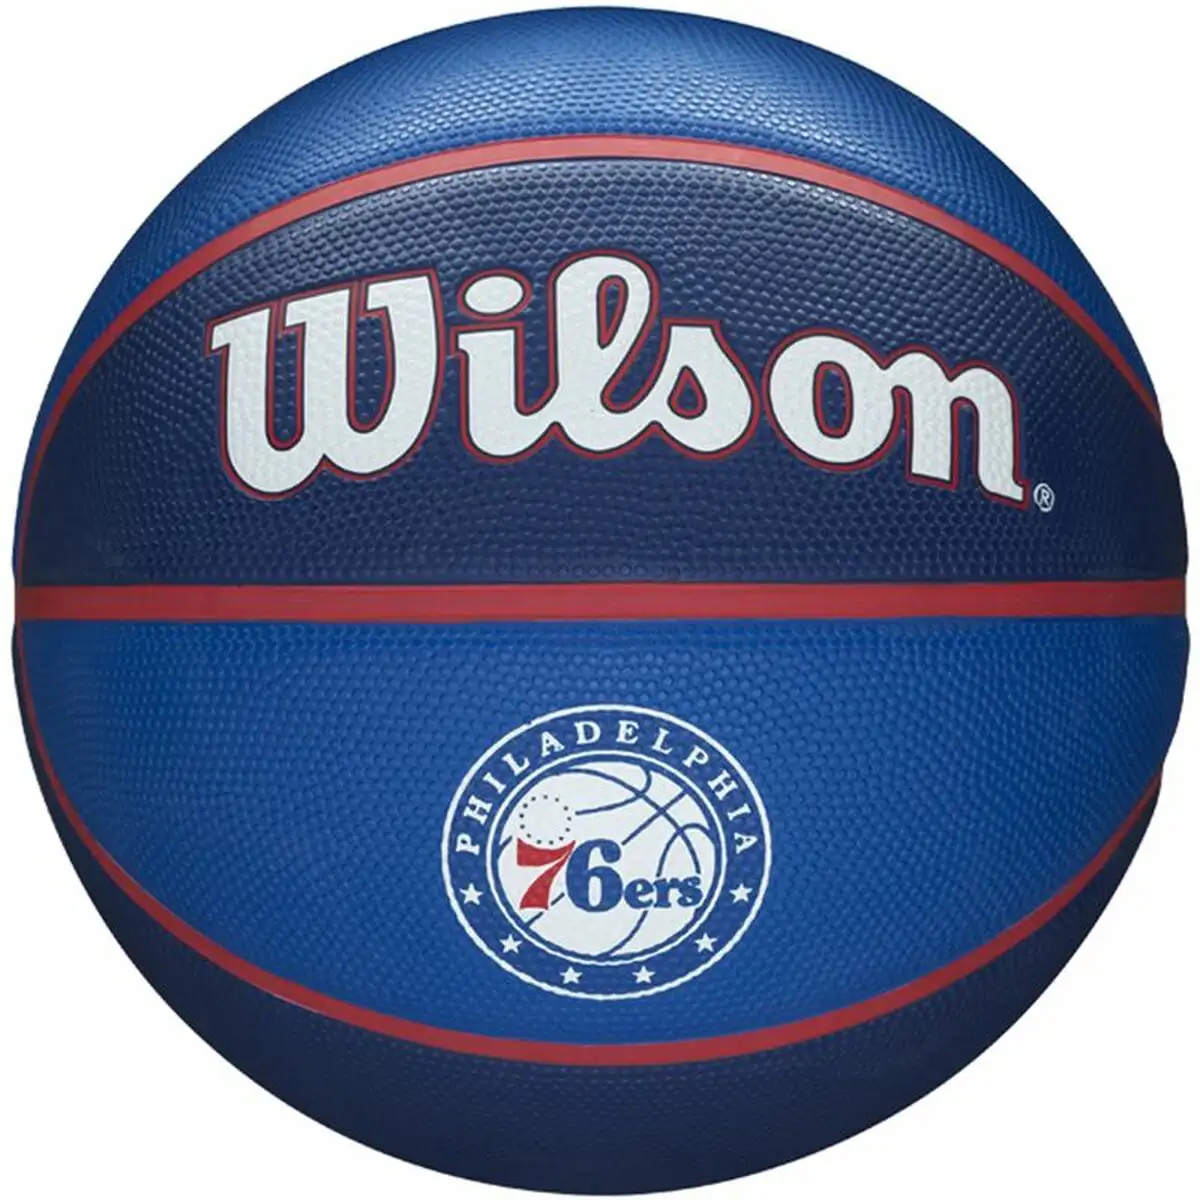 Ballon de basket wilson nba tribute philadelphia bleu taille unique_9981. DIAYTAR SENEGAL - Où Choisir Devient un Acte de Découverte. Découvrez notre gamme et choisissez des produits qui éveillent votre curiosité et élargissent vos horizons.